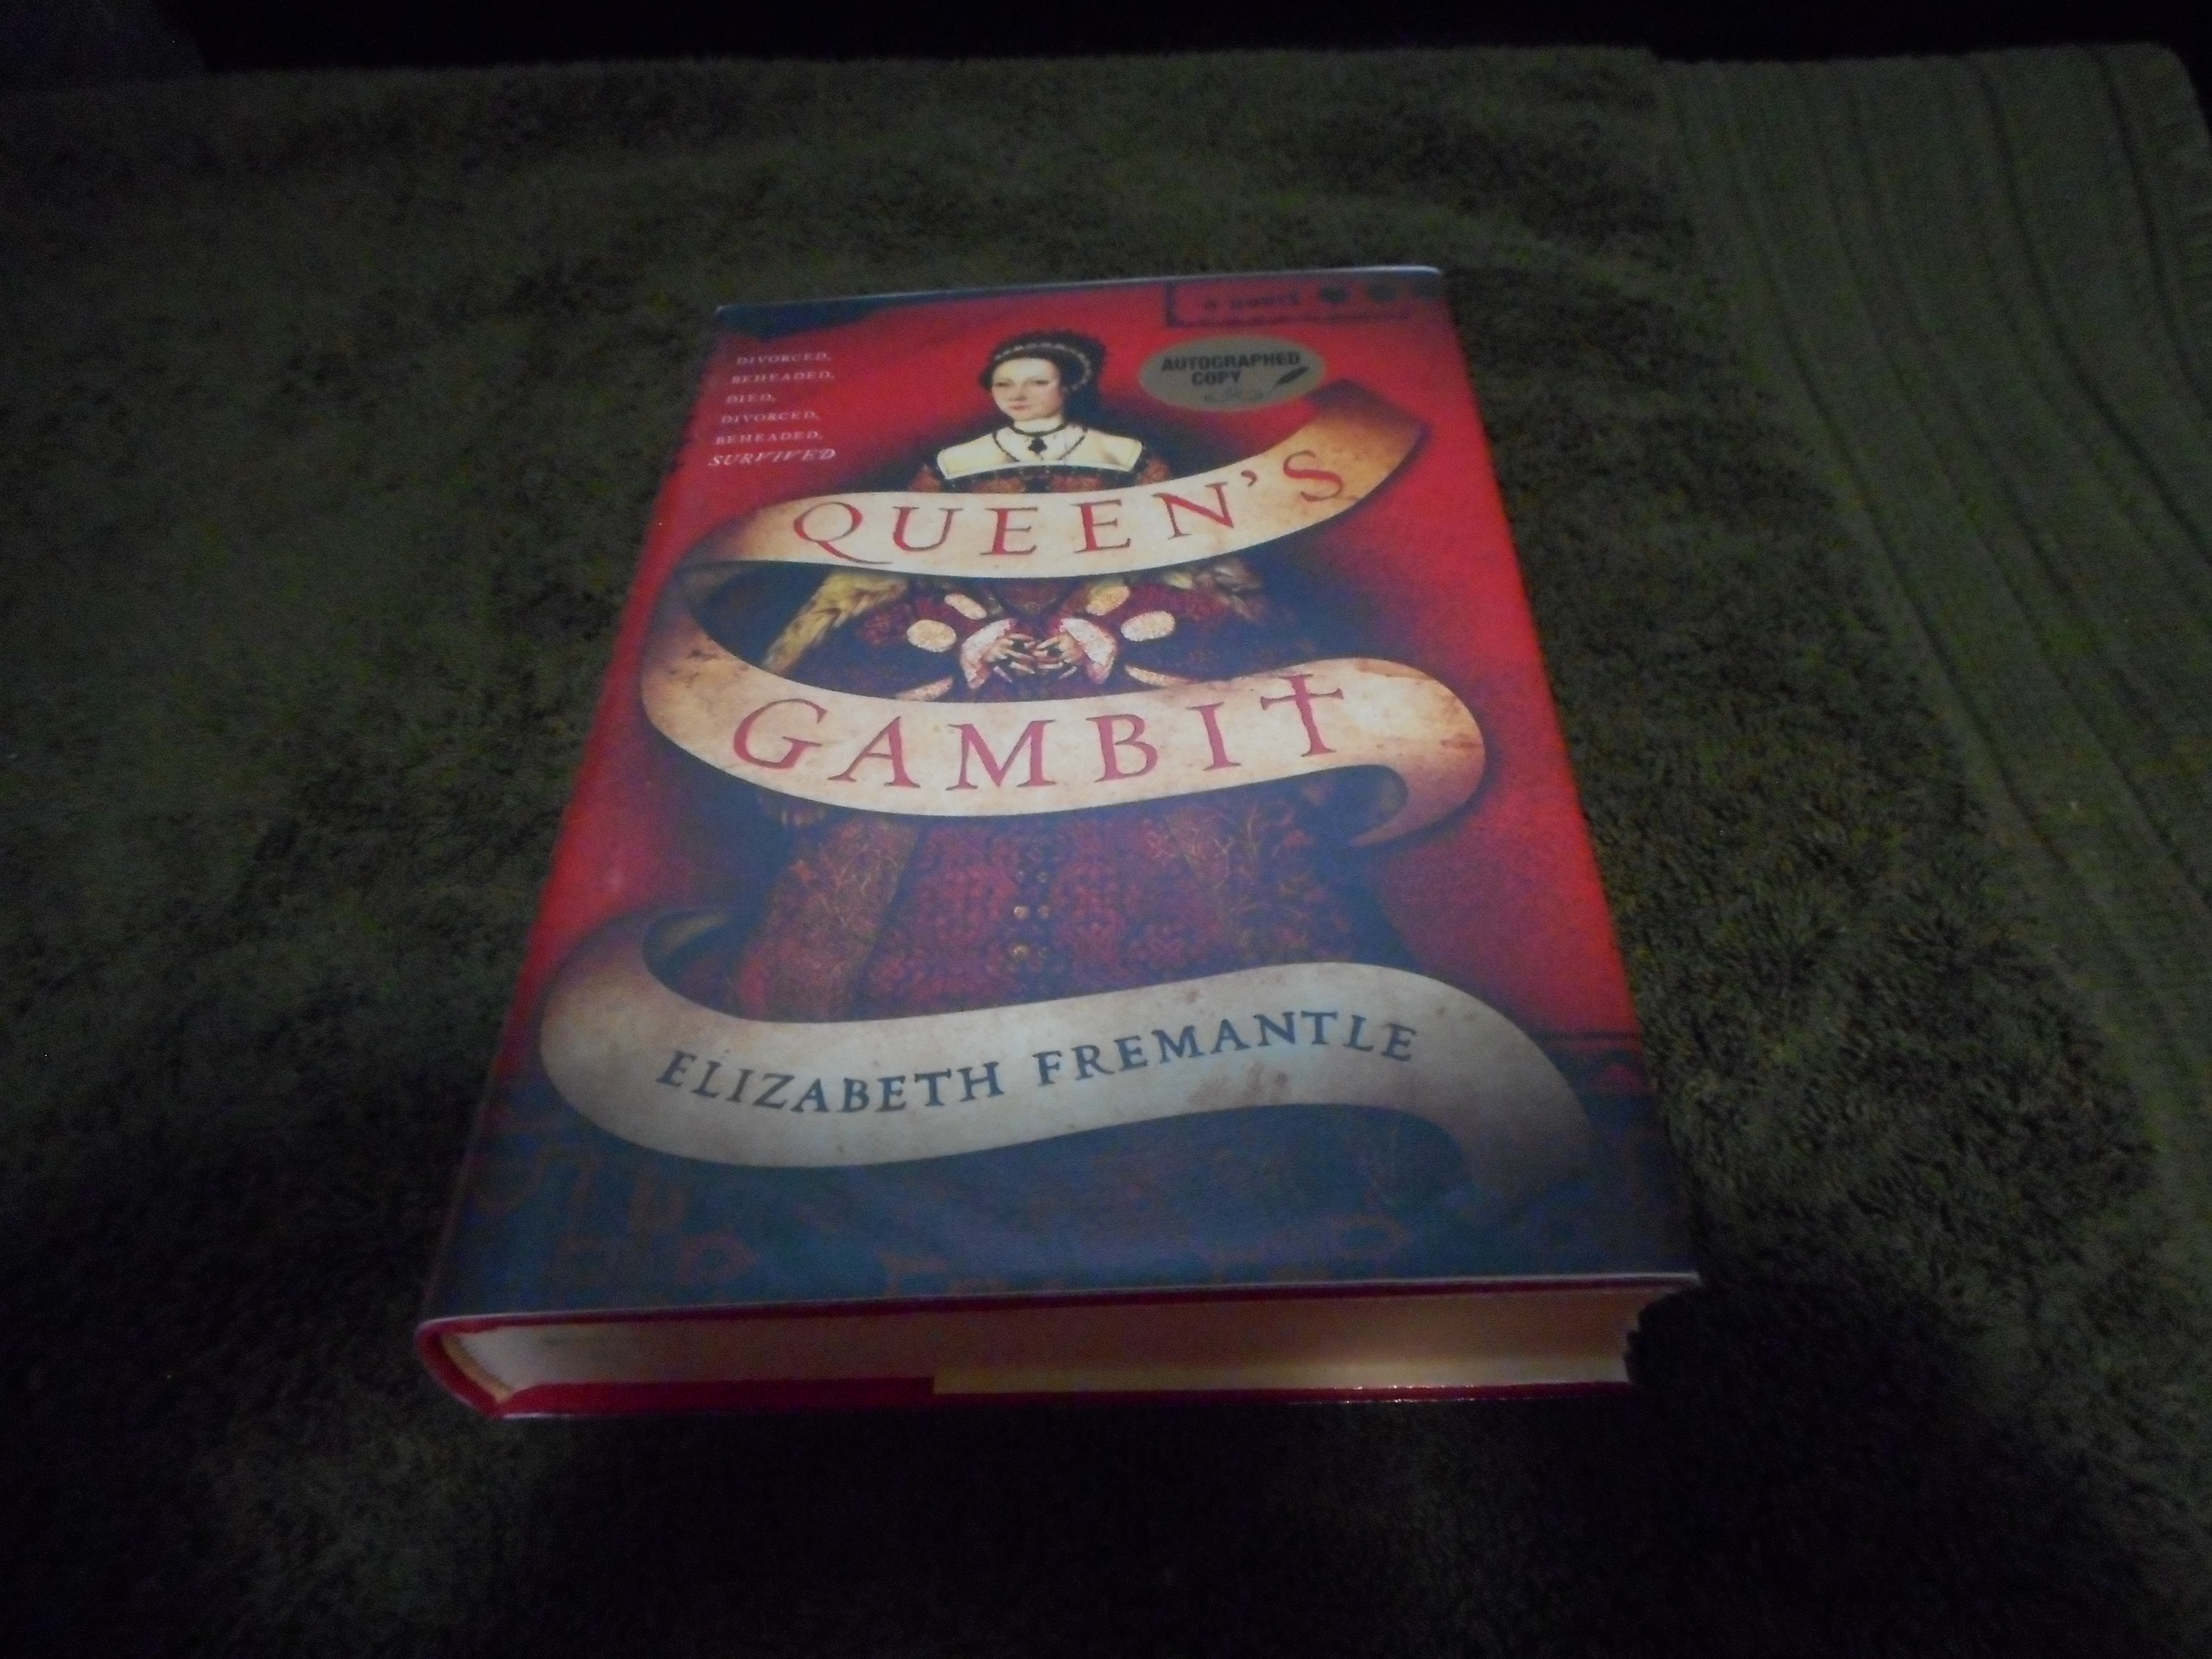 Queen's Gambit, Book by Elizabeth Fremantle